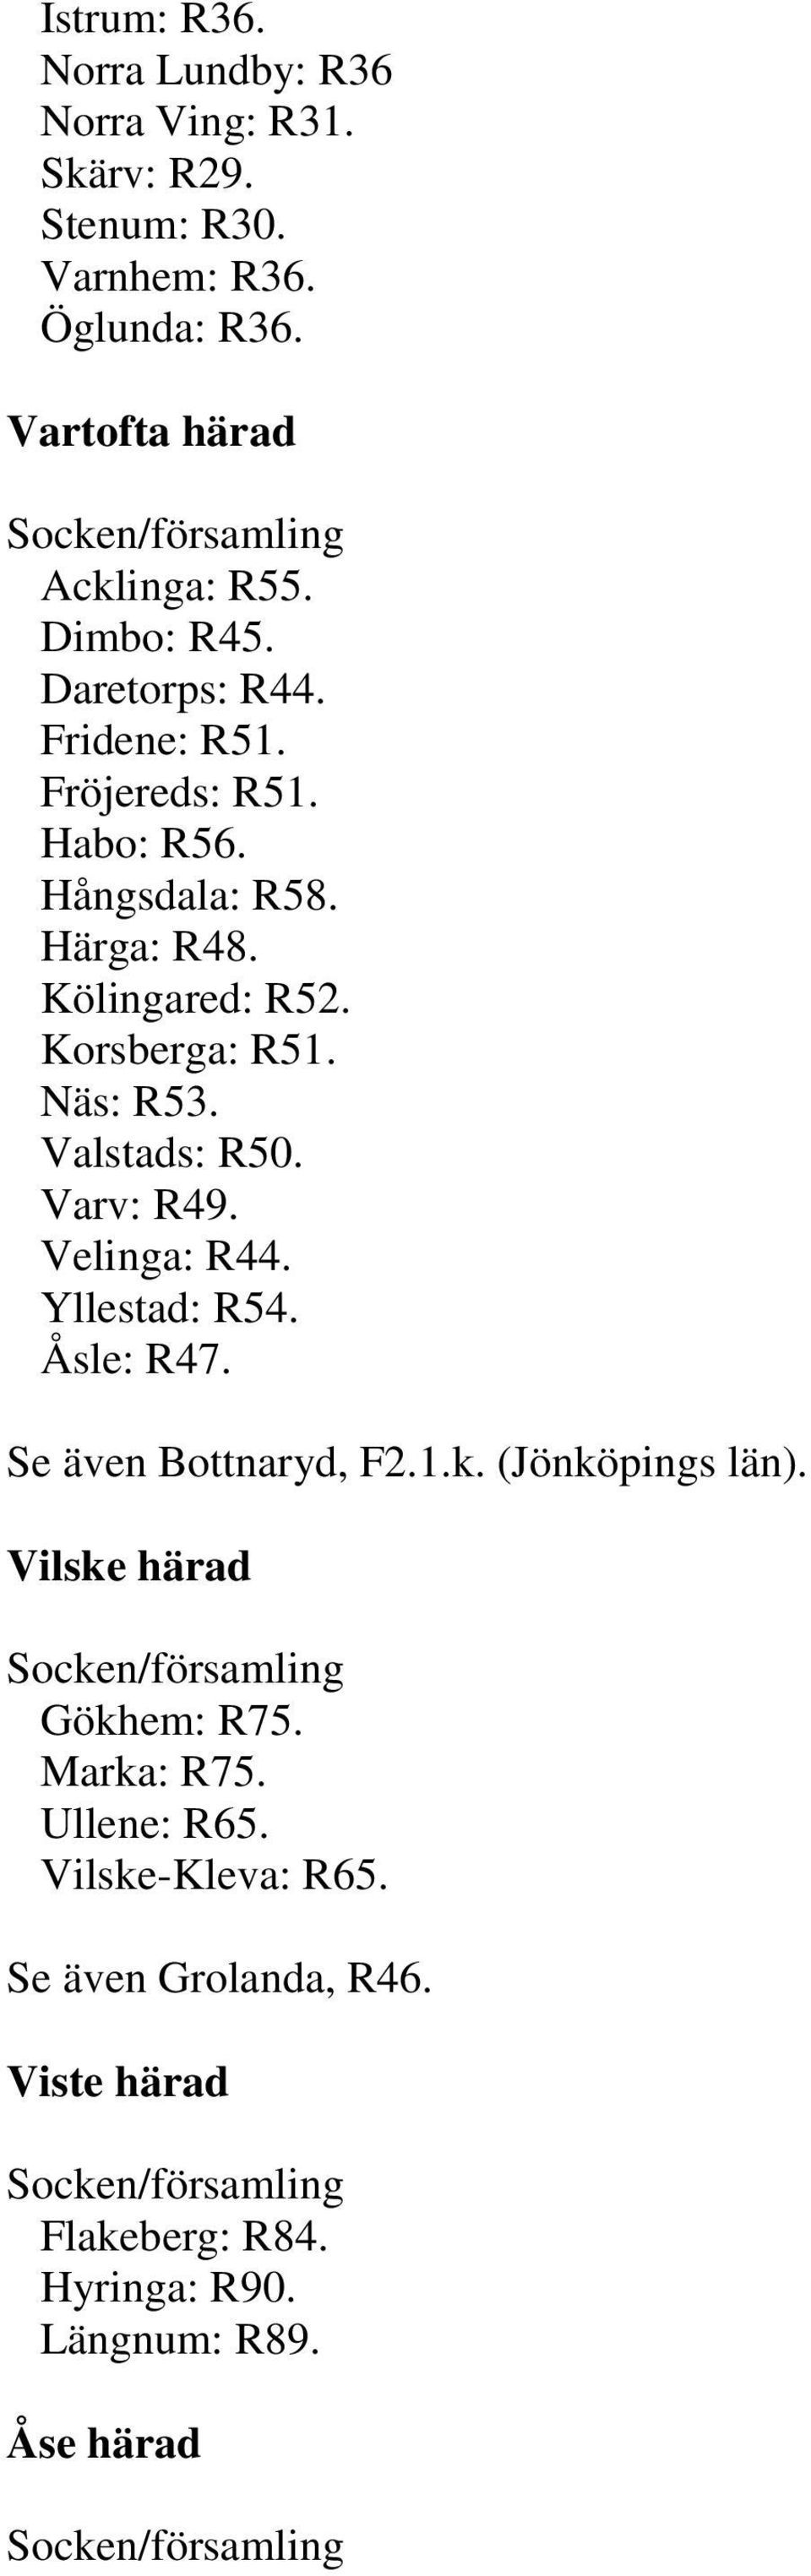 Näs: R53. Valstads: R50. Varv: R49. Velinga: R44. Yllestad: R54. Åsle: R47. Se även Bottnaryd, F2.1.k. (Jönköpings län).